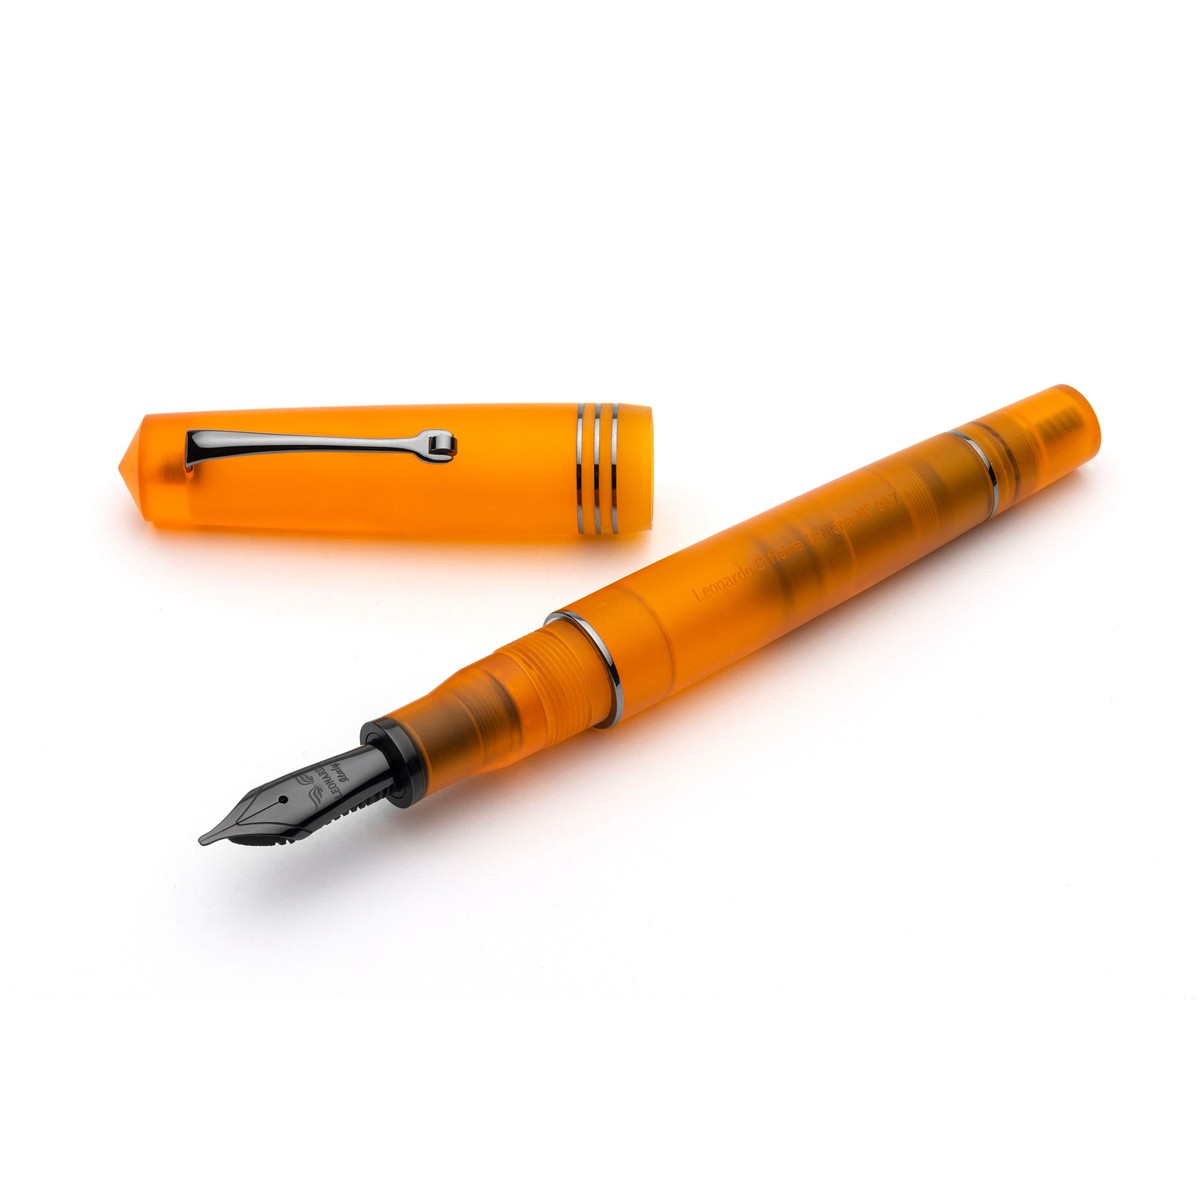 Leonardo Officina Italiana - Momento Zero Pura Ruthenium Flame Orange - Fountain pen - Steel nib